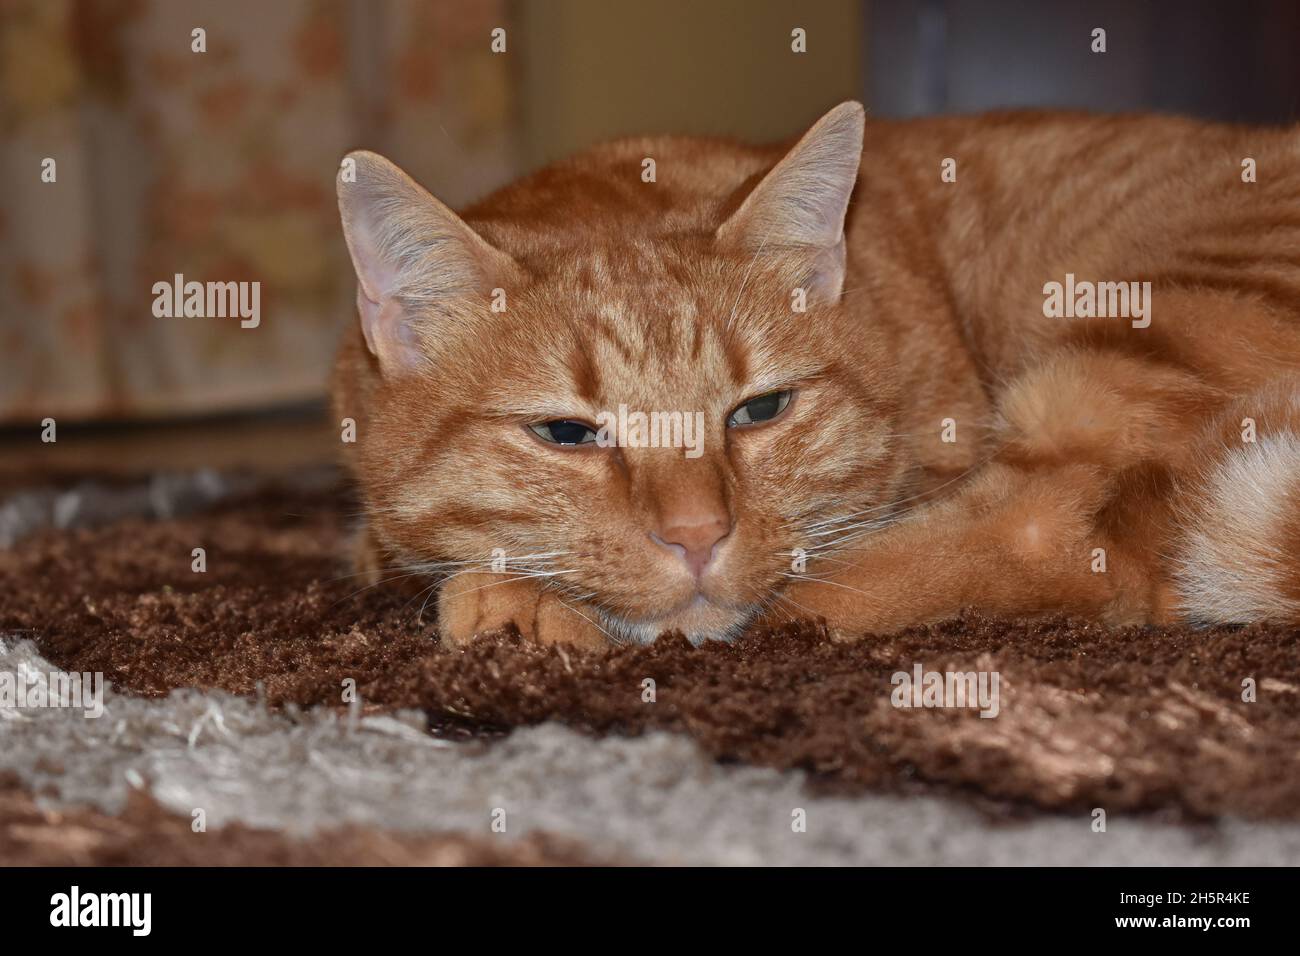 Sleepy Red Cat Stock Photo